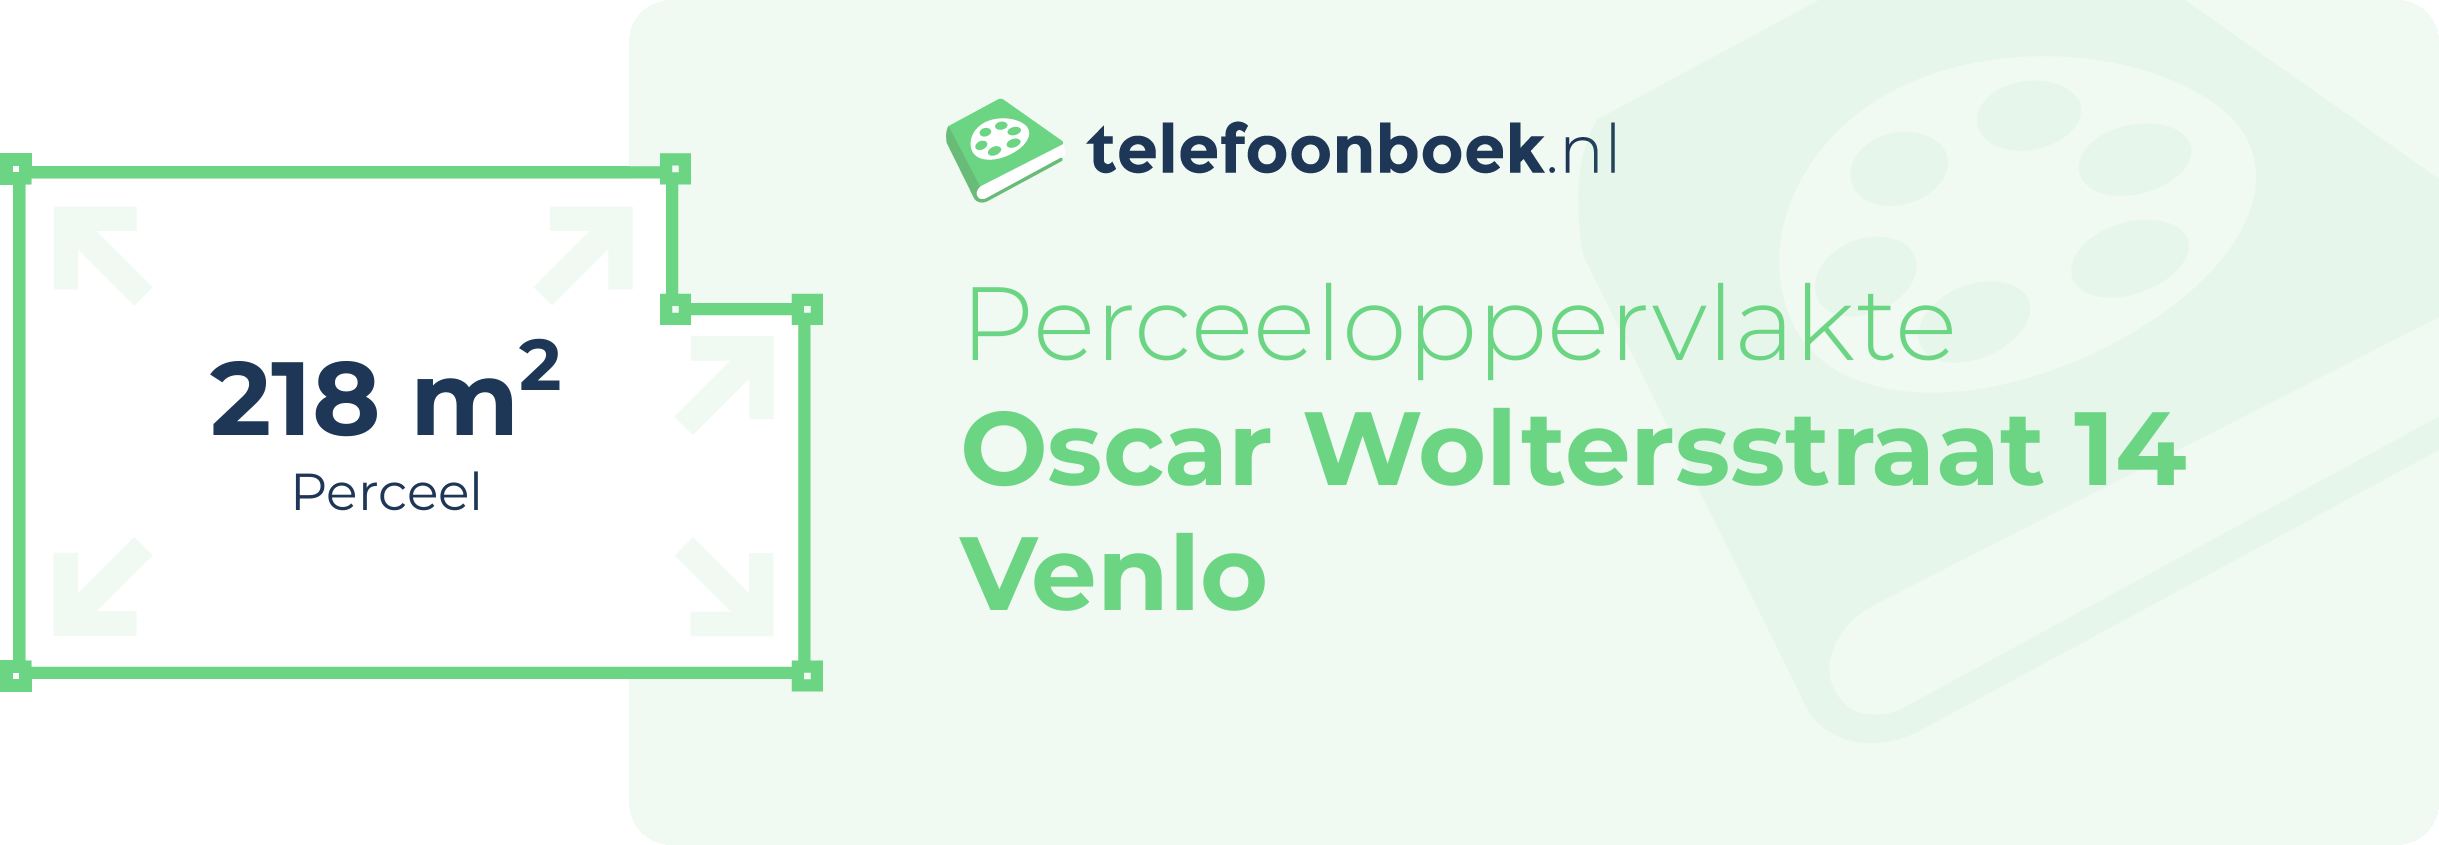 Perceeloppervlakte Oscar Woltersstraat 14 Venlo